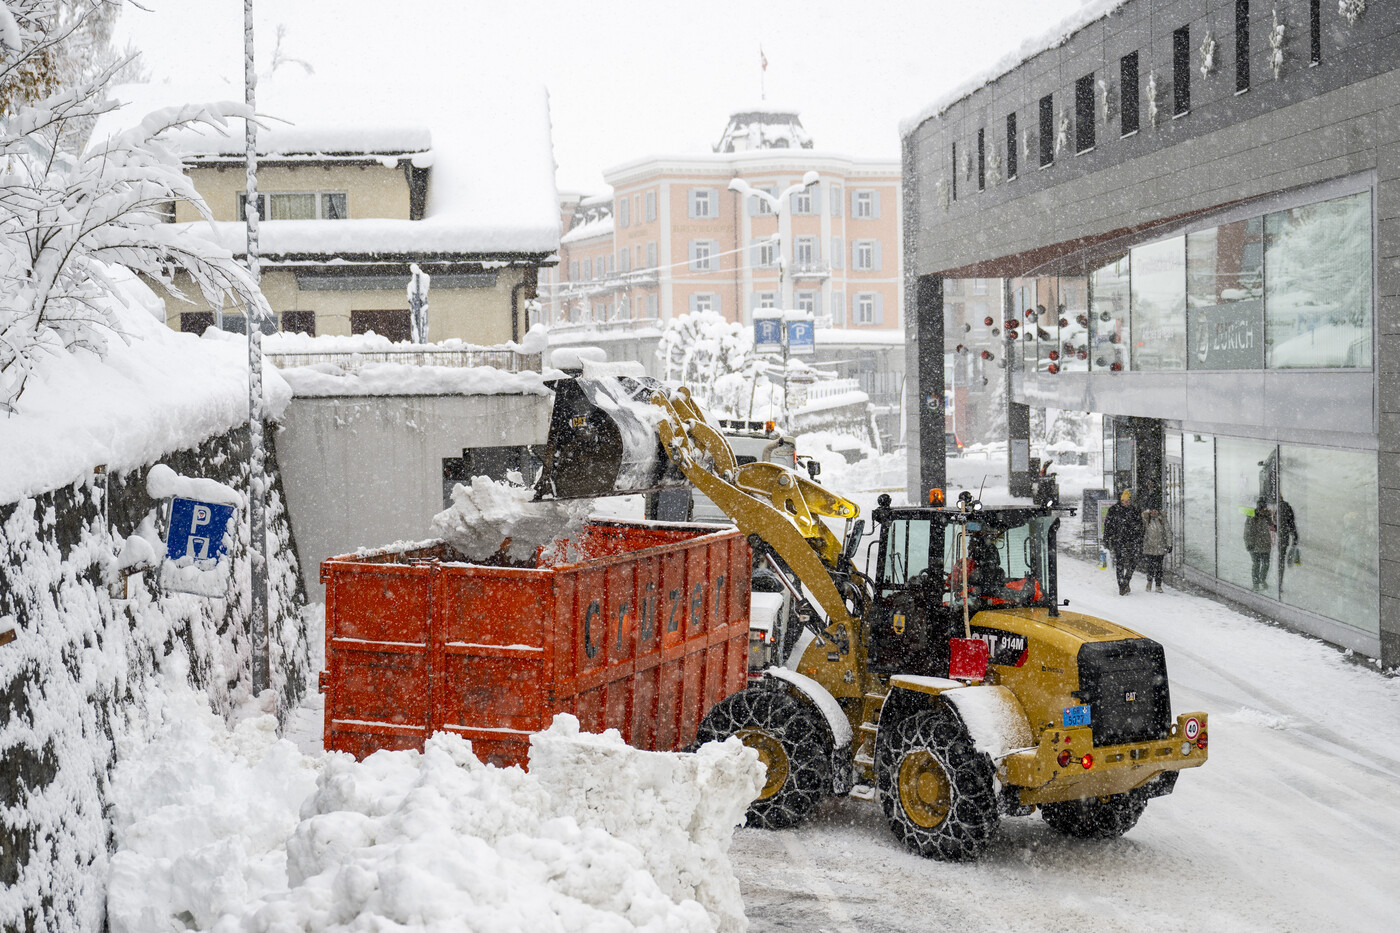 Wintereinbruch in Scuol: Der Schnee wird am Samstag in einen Container verladen.